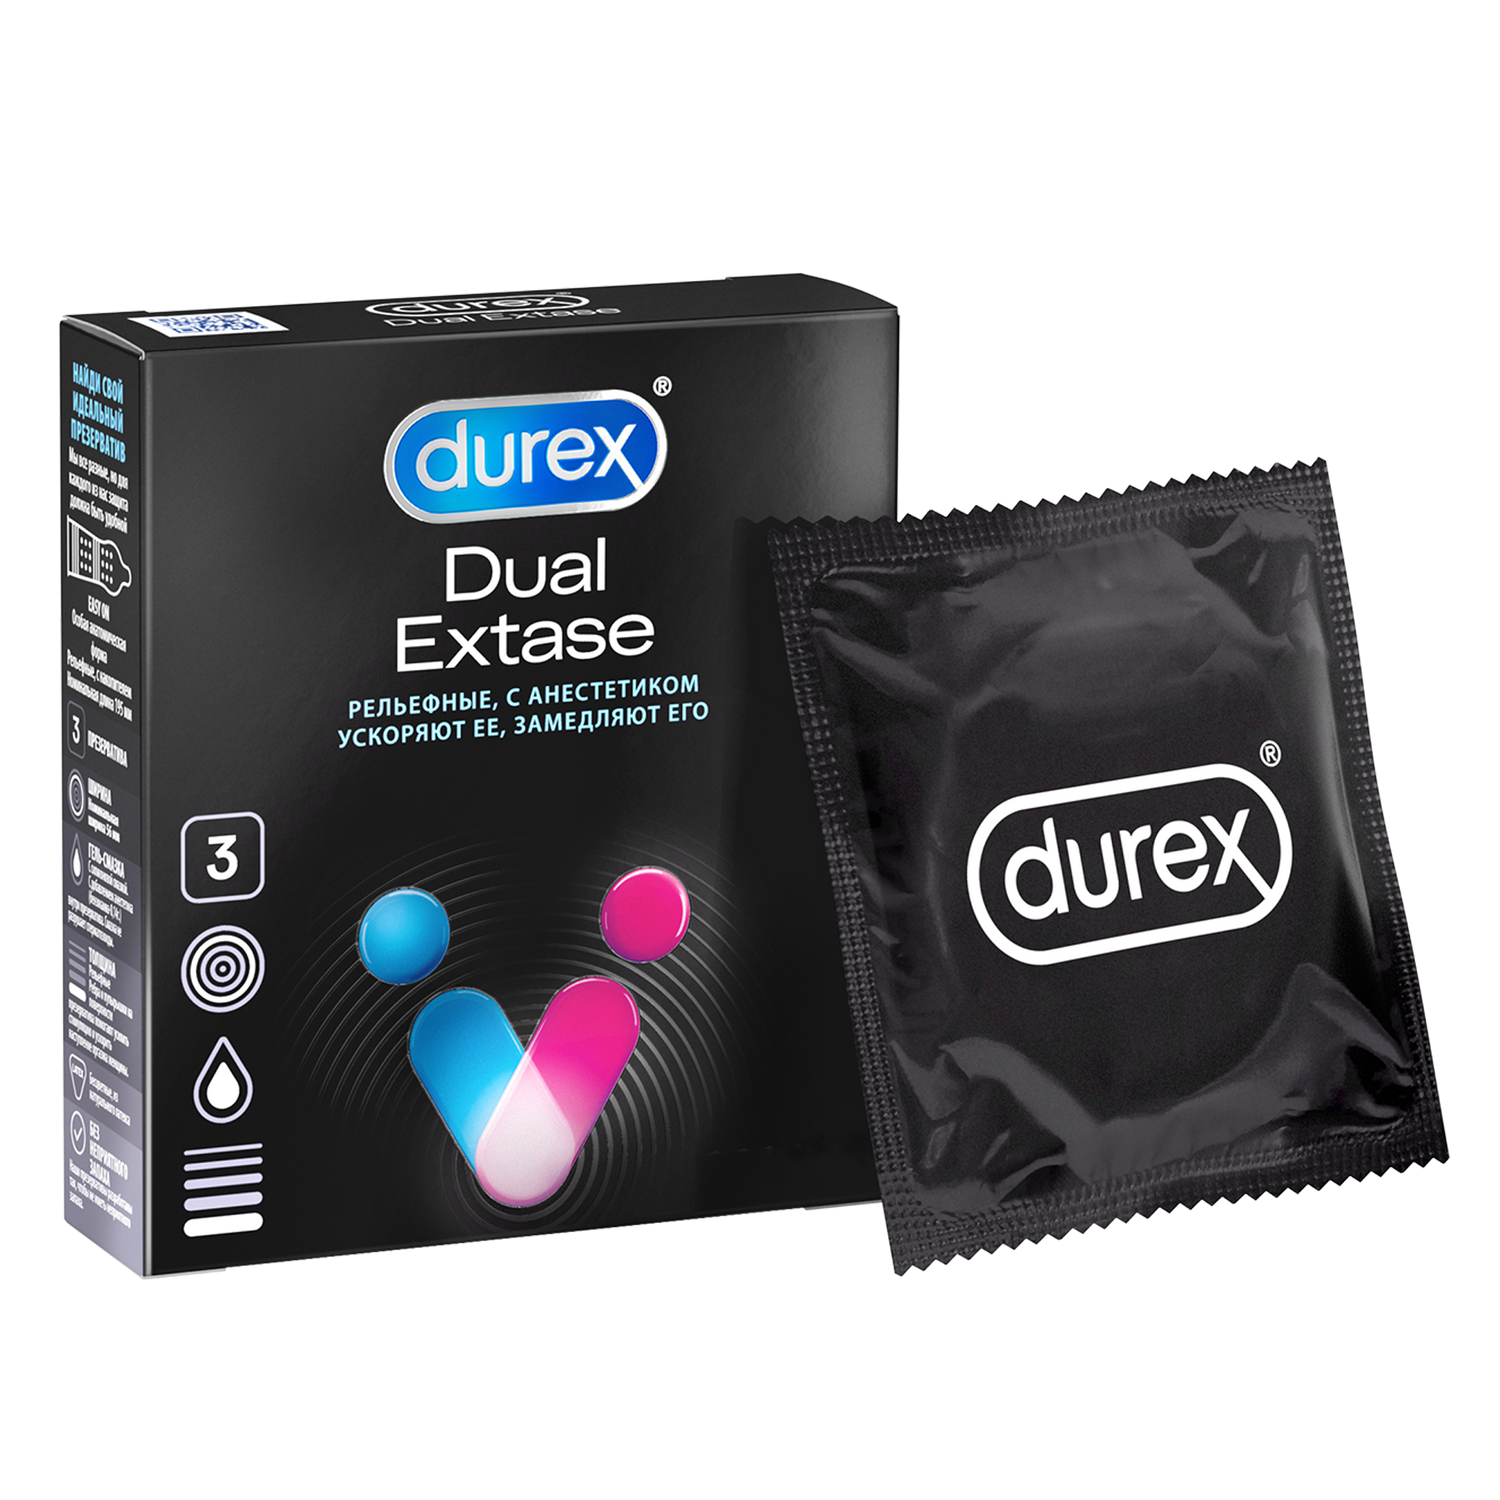 Презервативы Durex Dual Extase, рельефные с анестетиком, 3 шт. презервативы luxe maxima глубинная бомба 1 шт